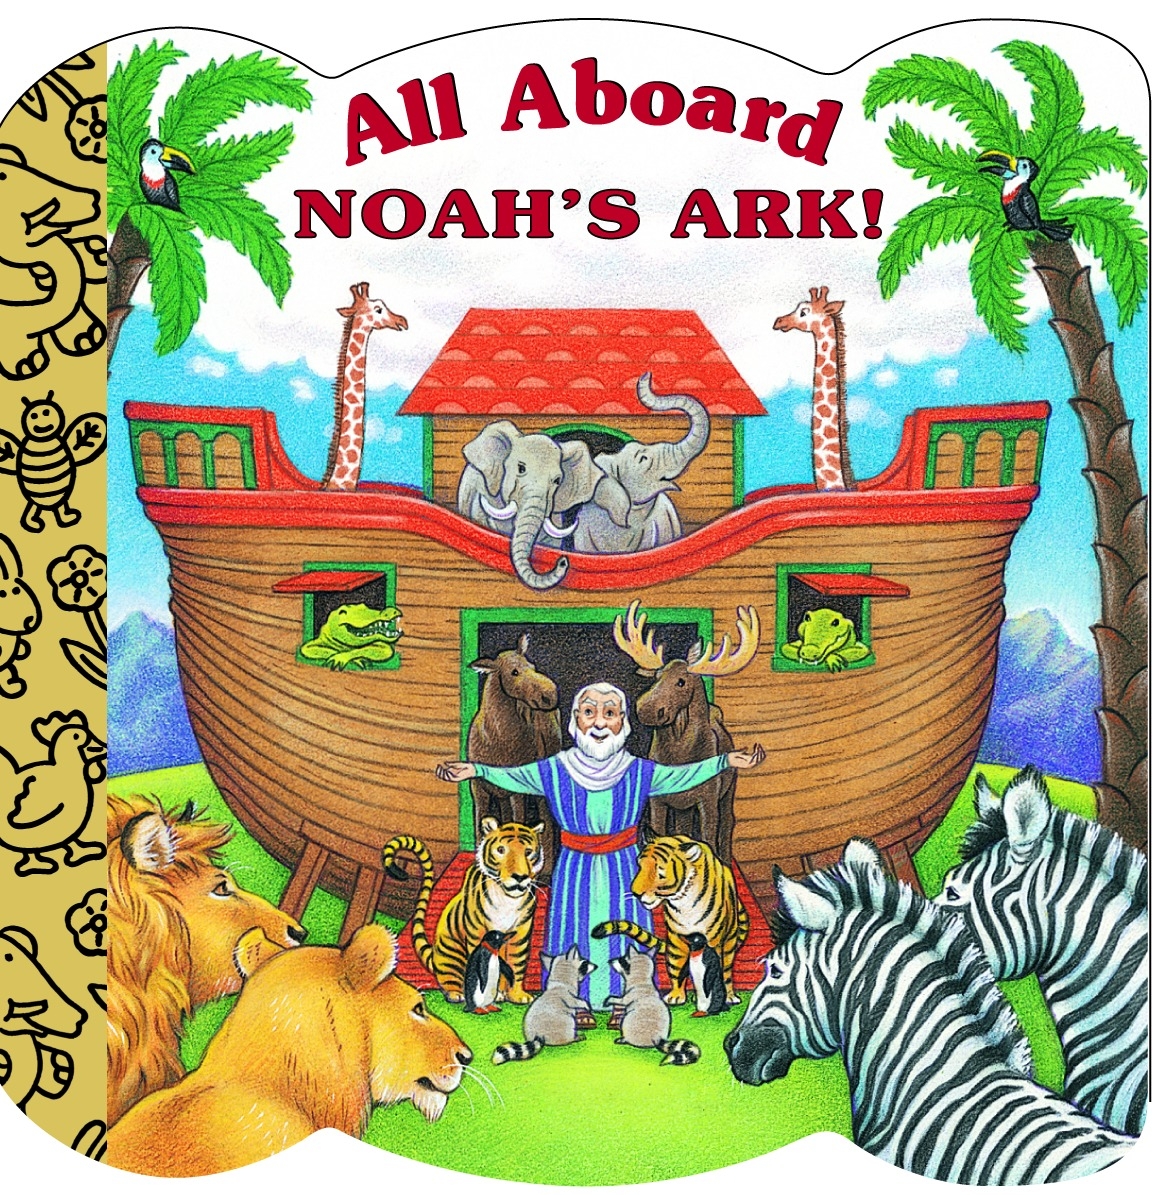 All Aboard Noah's Ark by Mary Josephs - Penguin Books Australia